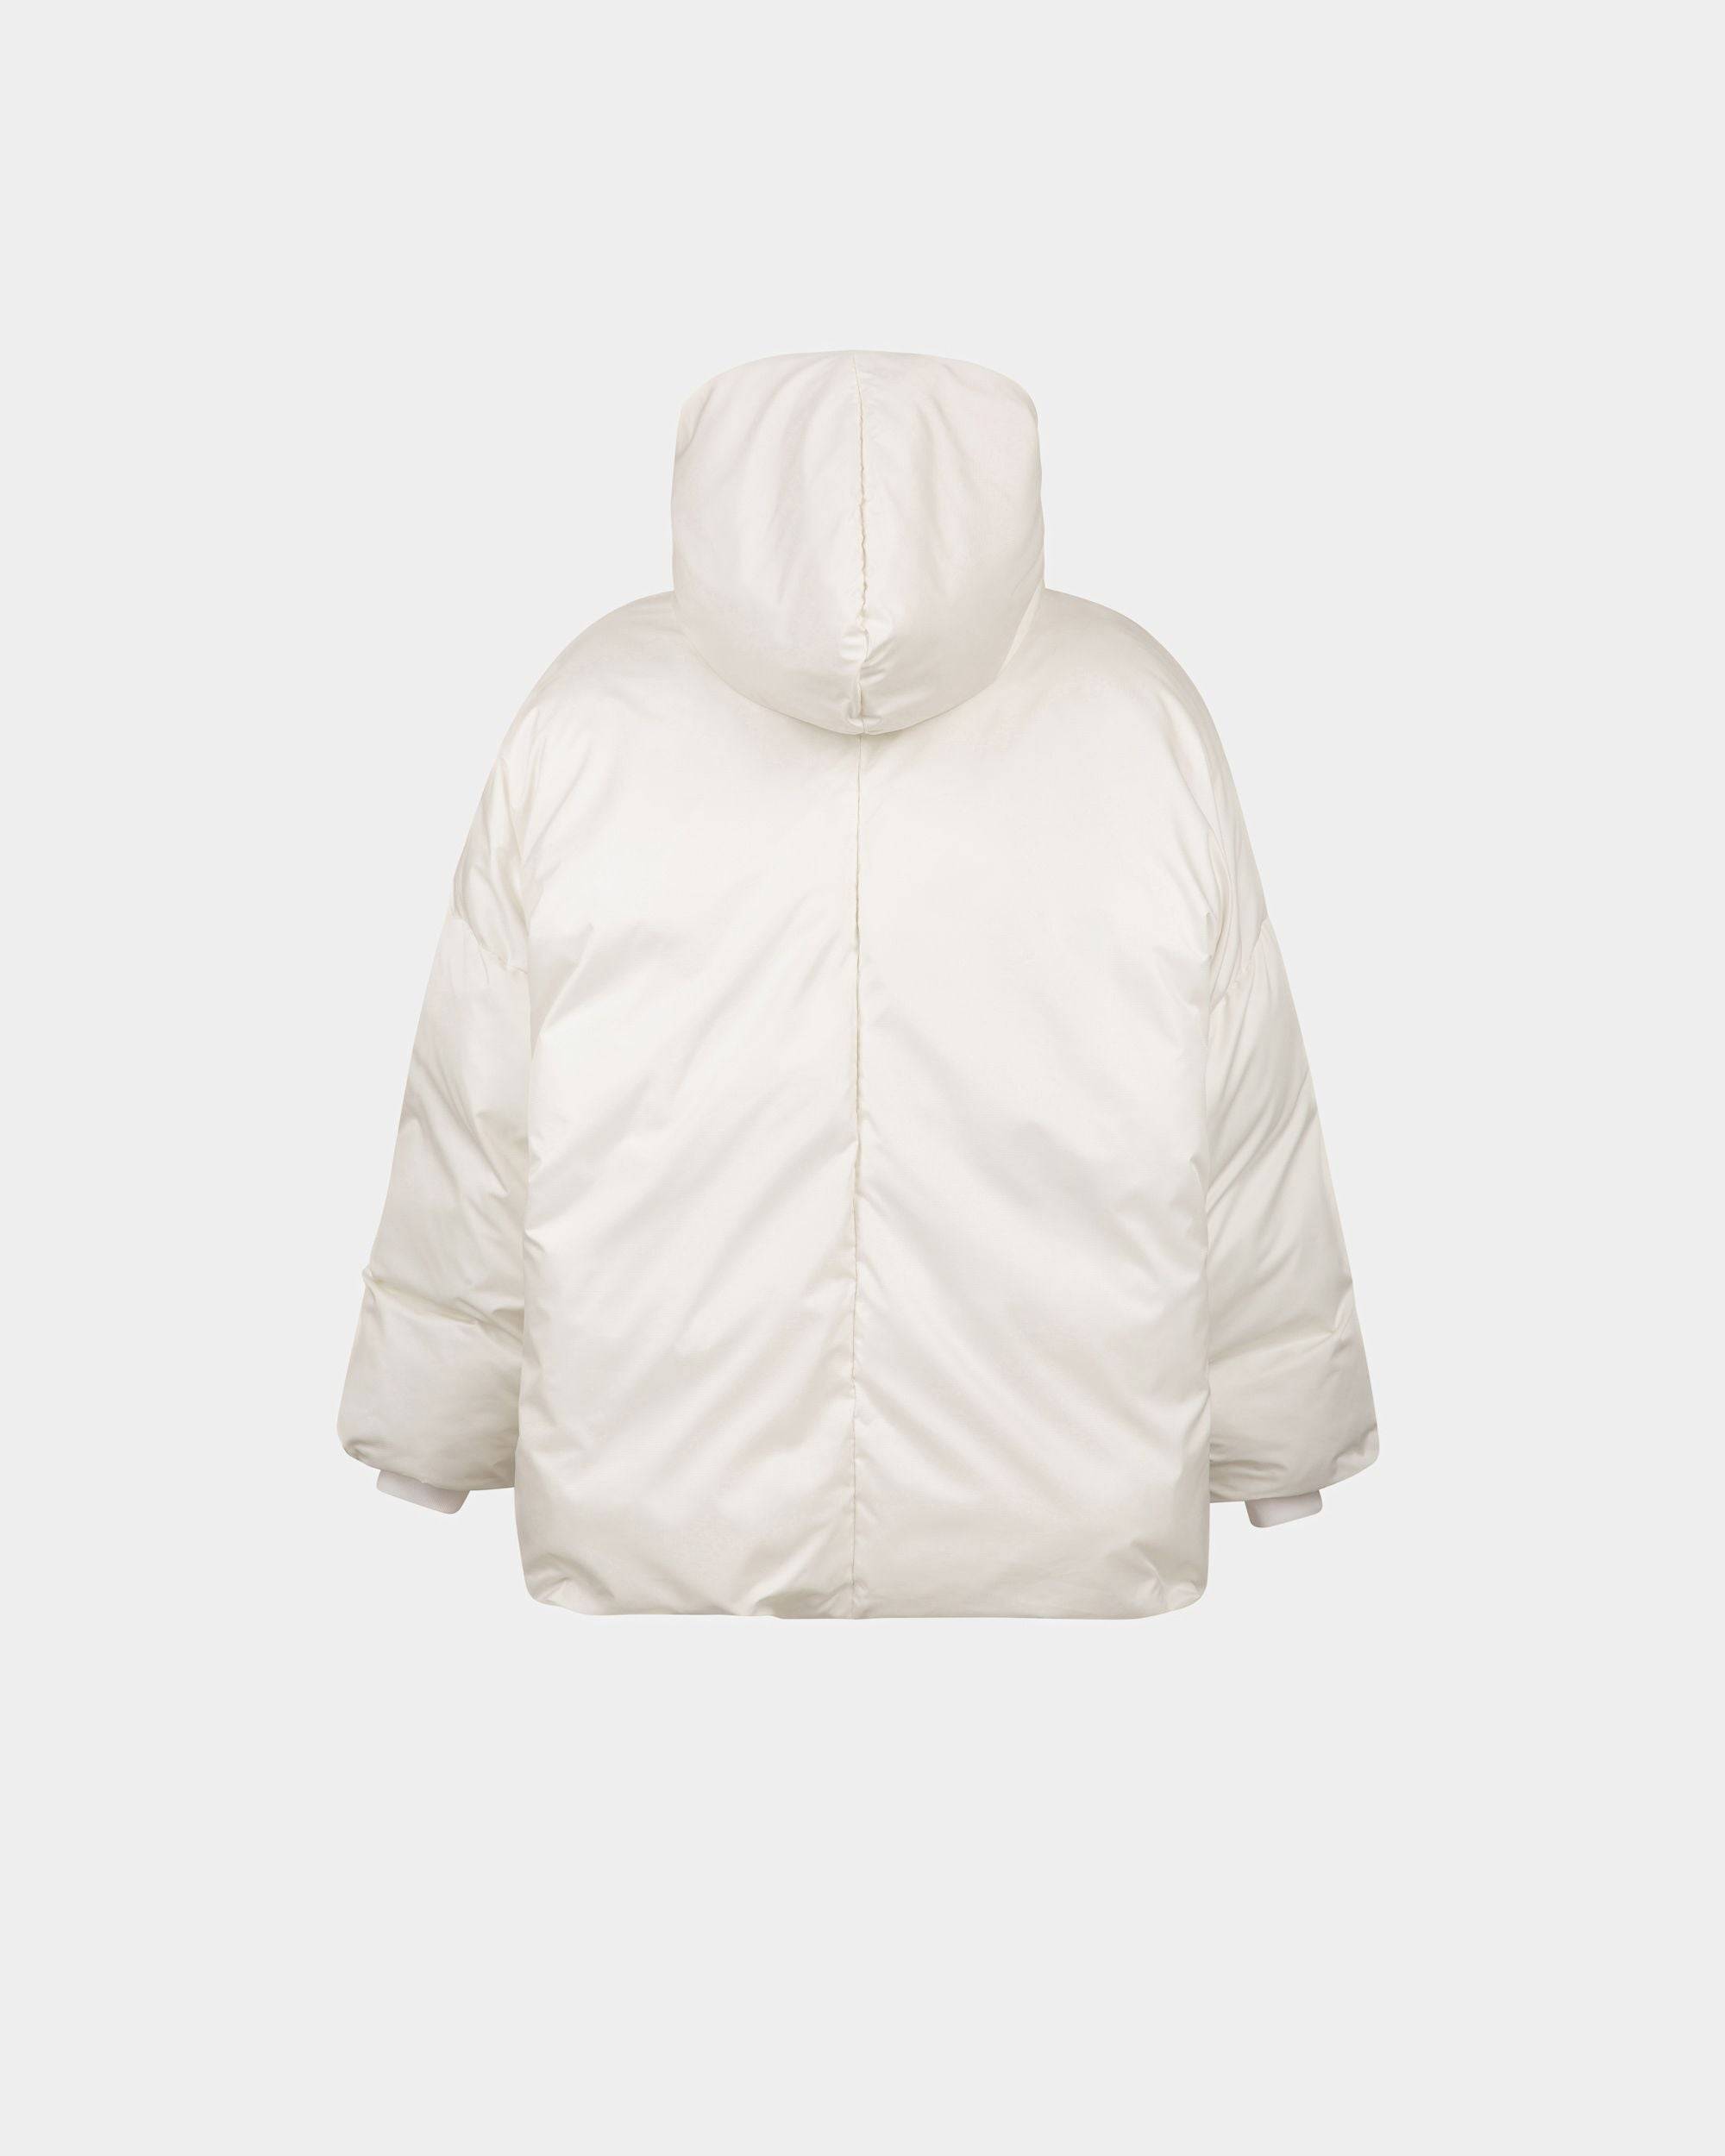 Women's Puffer Jacket in White Nylon | Bally | Still Life Back